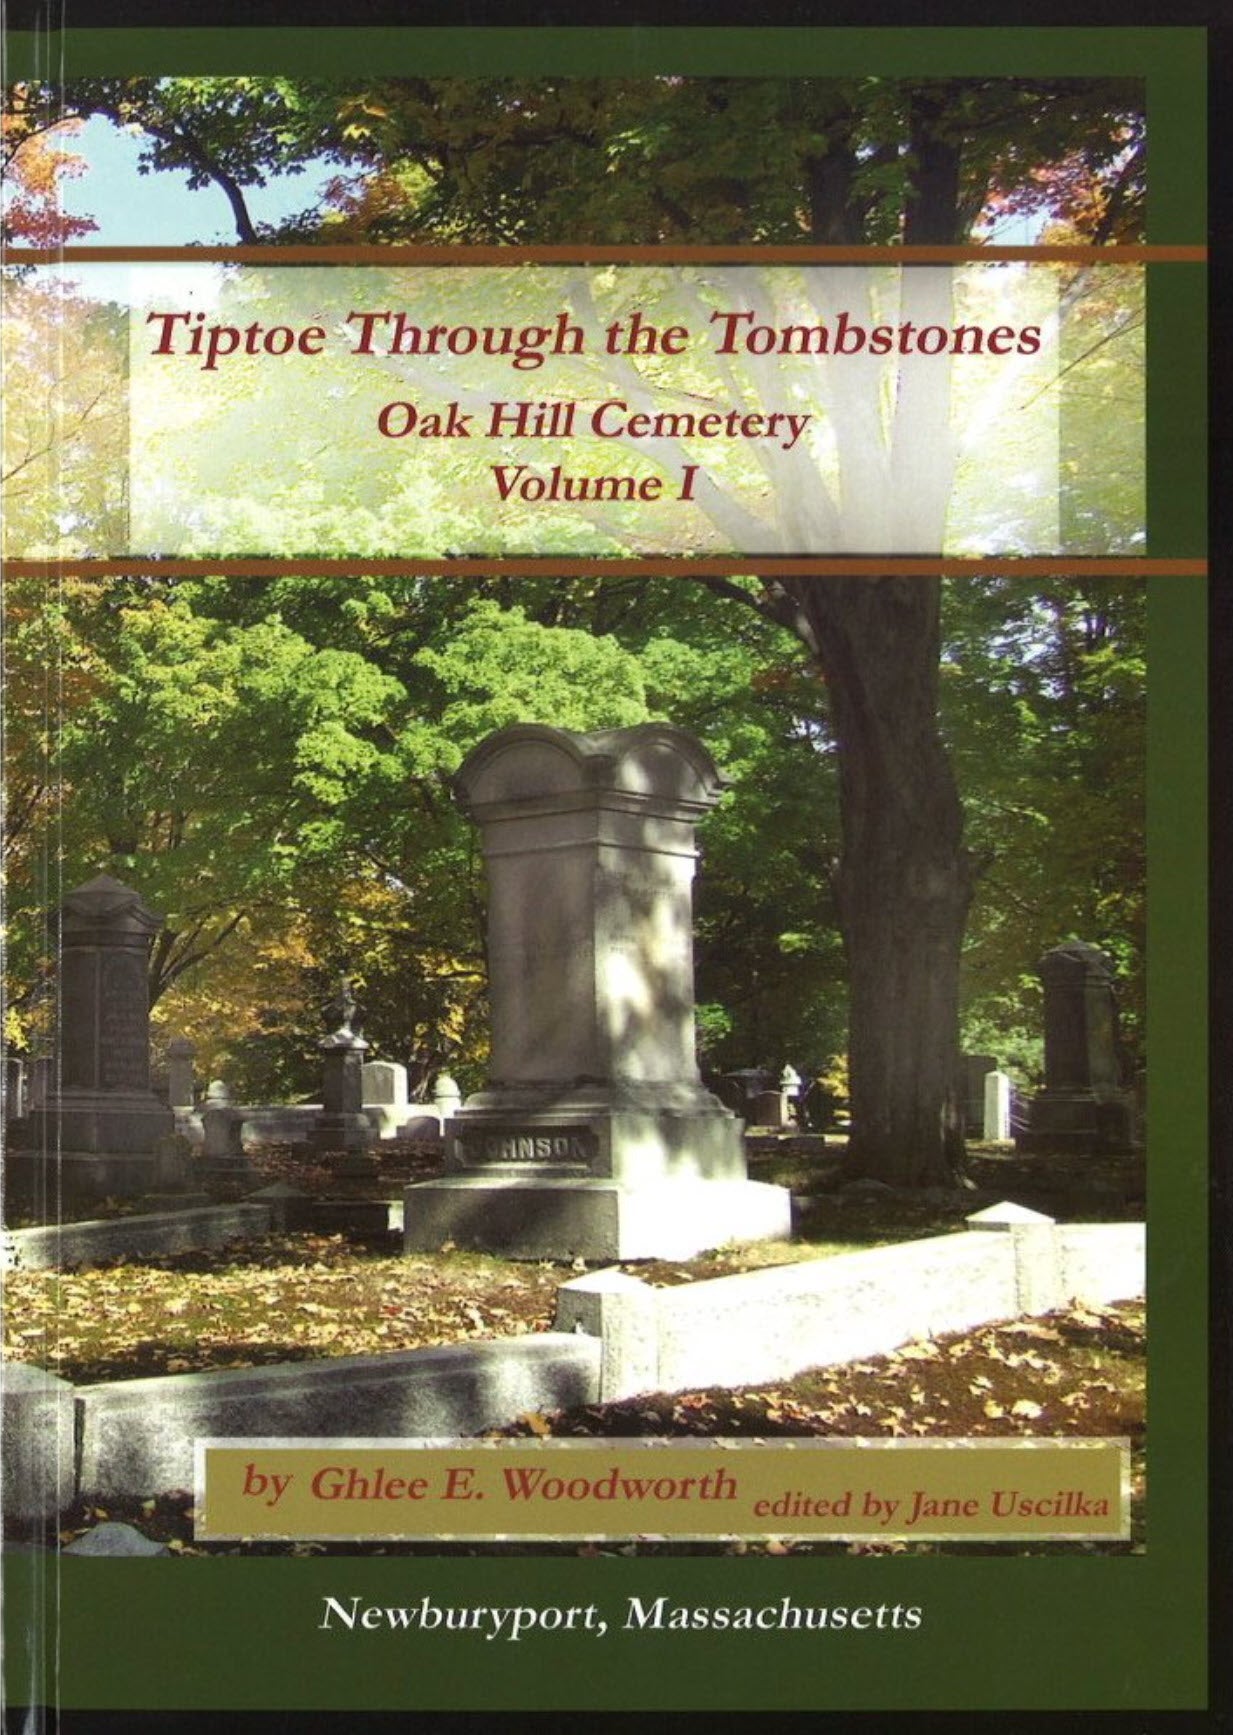 Tiptoe Through the Tombstones | Volume 1